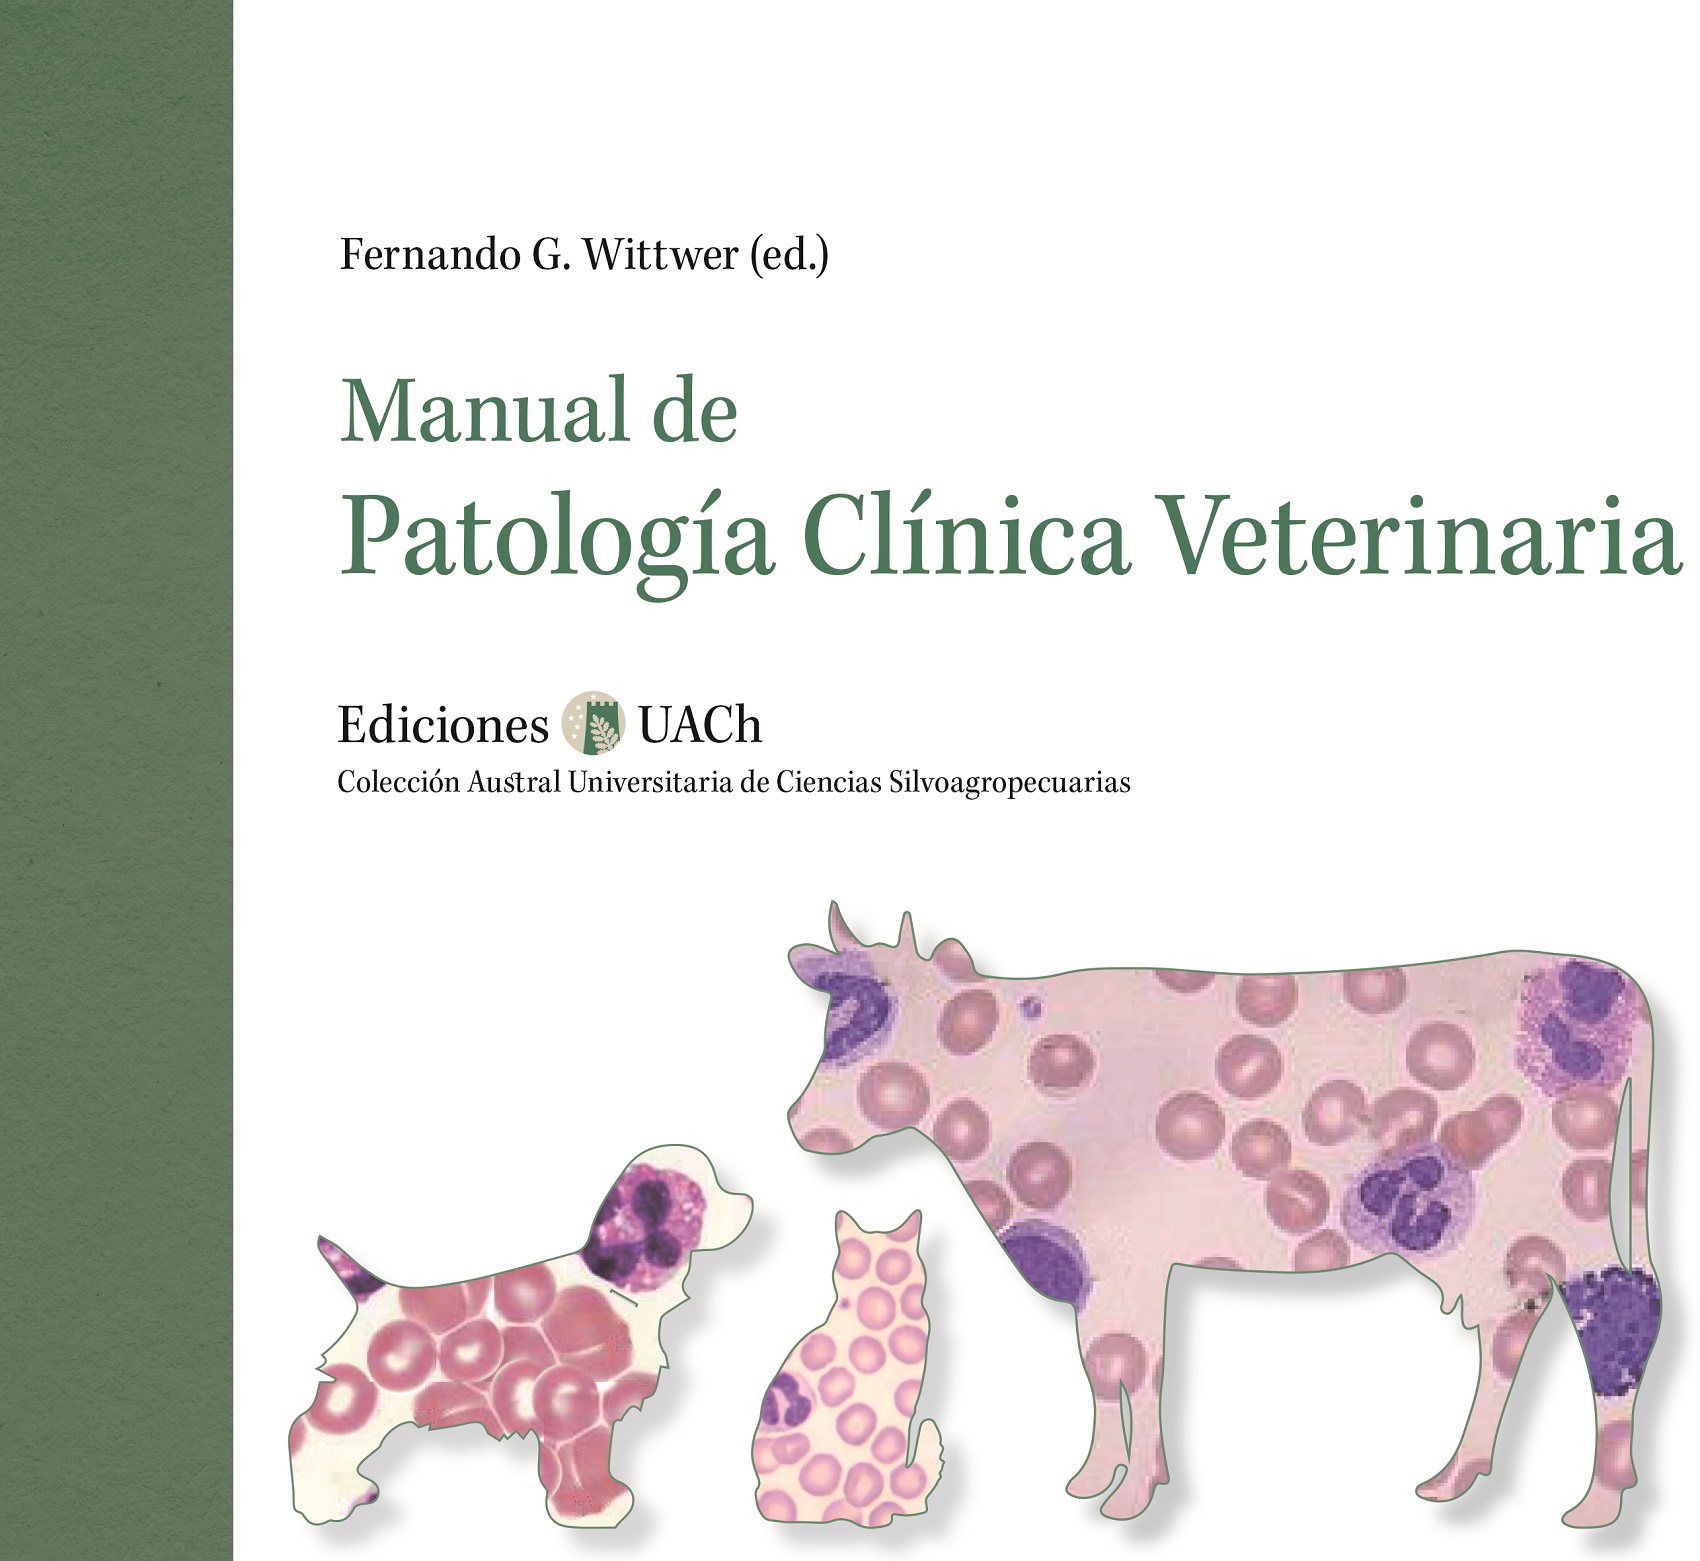 Manual de Patología Clínica Veterinaria actualiza conocimientos en práctica y estudio de animales - Noticias UACh